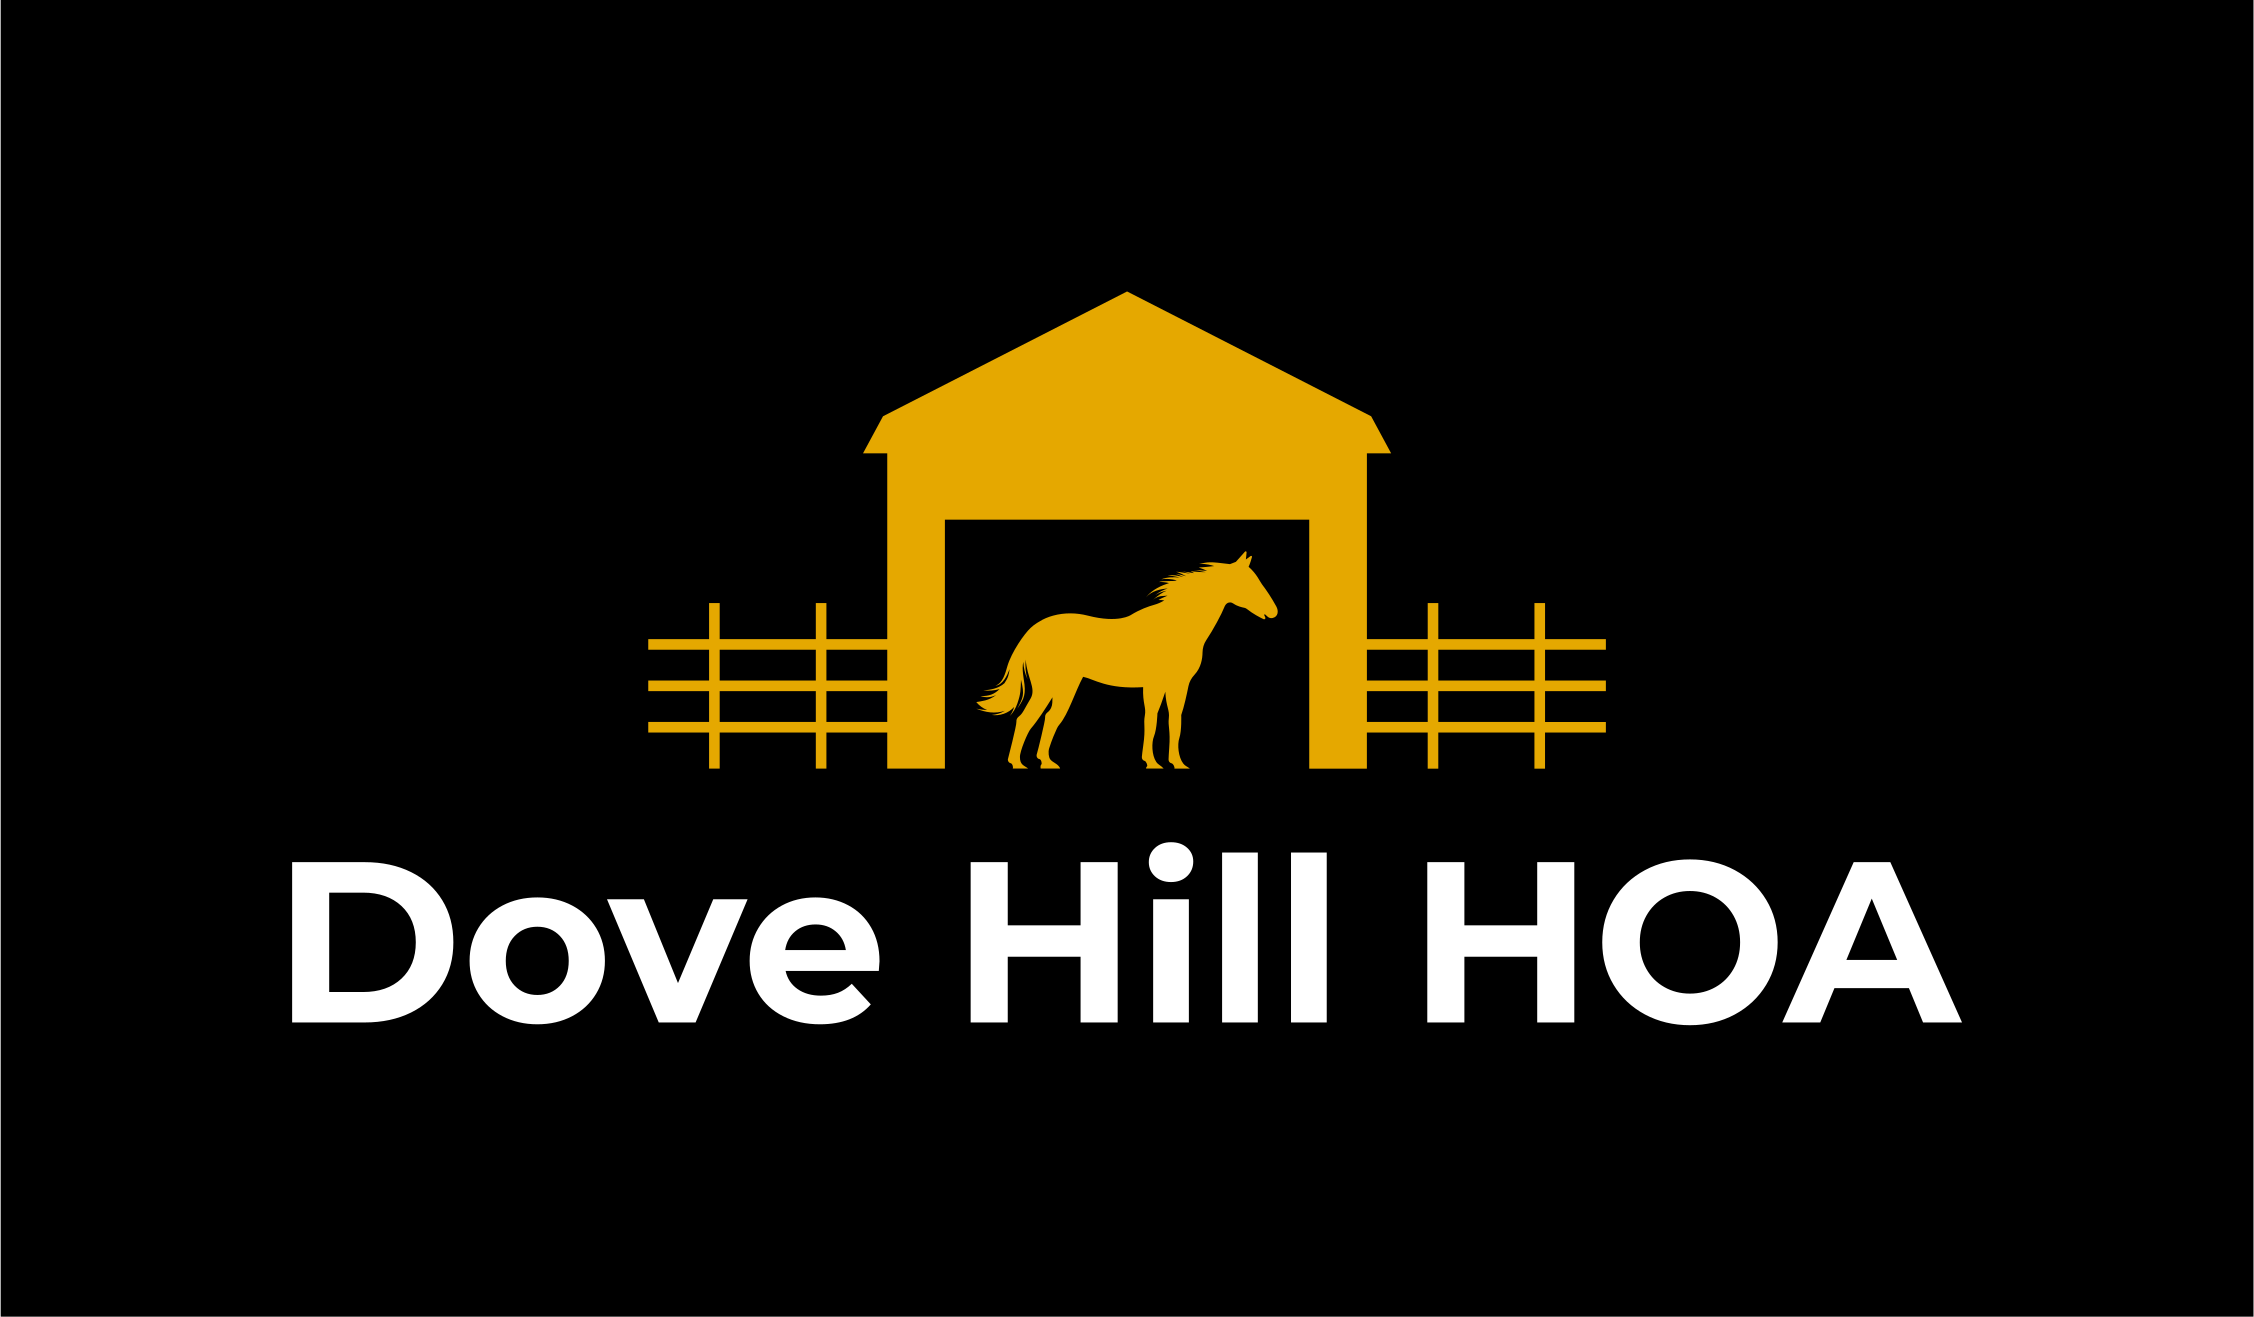 HOA Logo